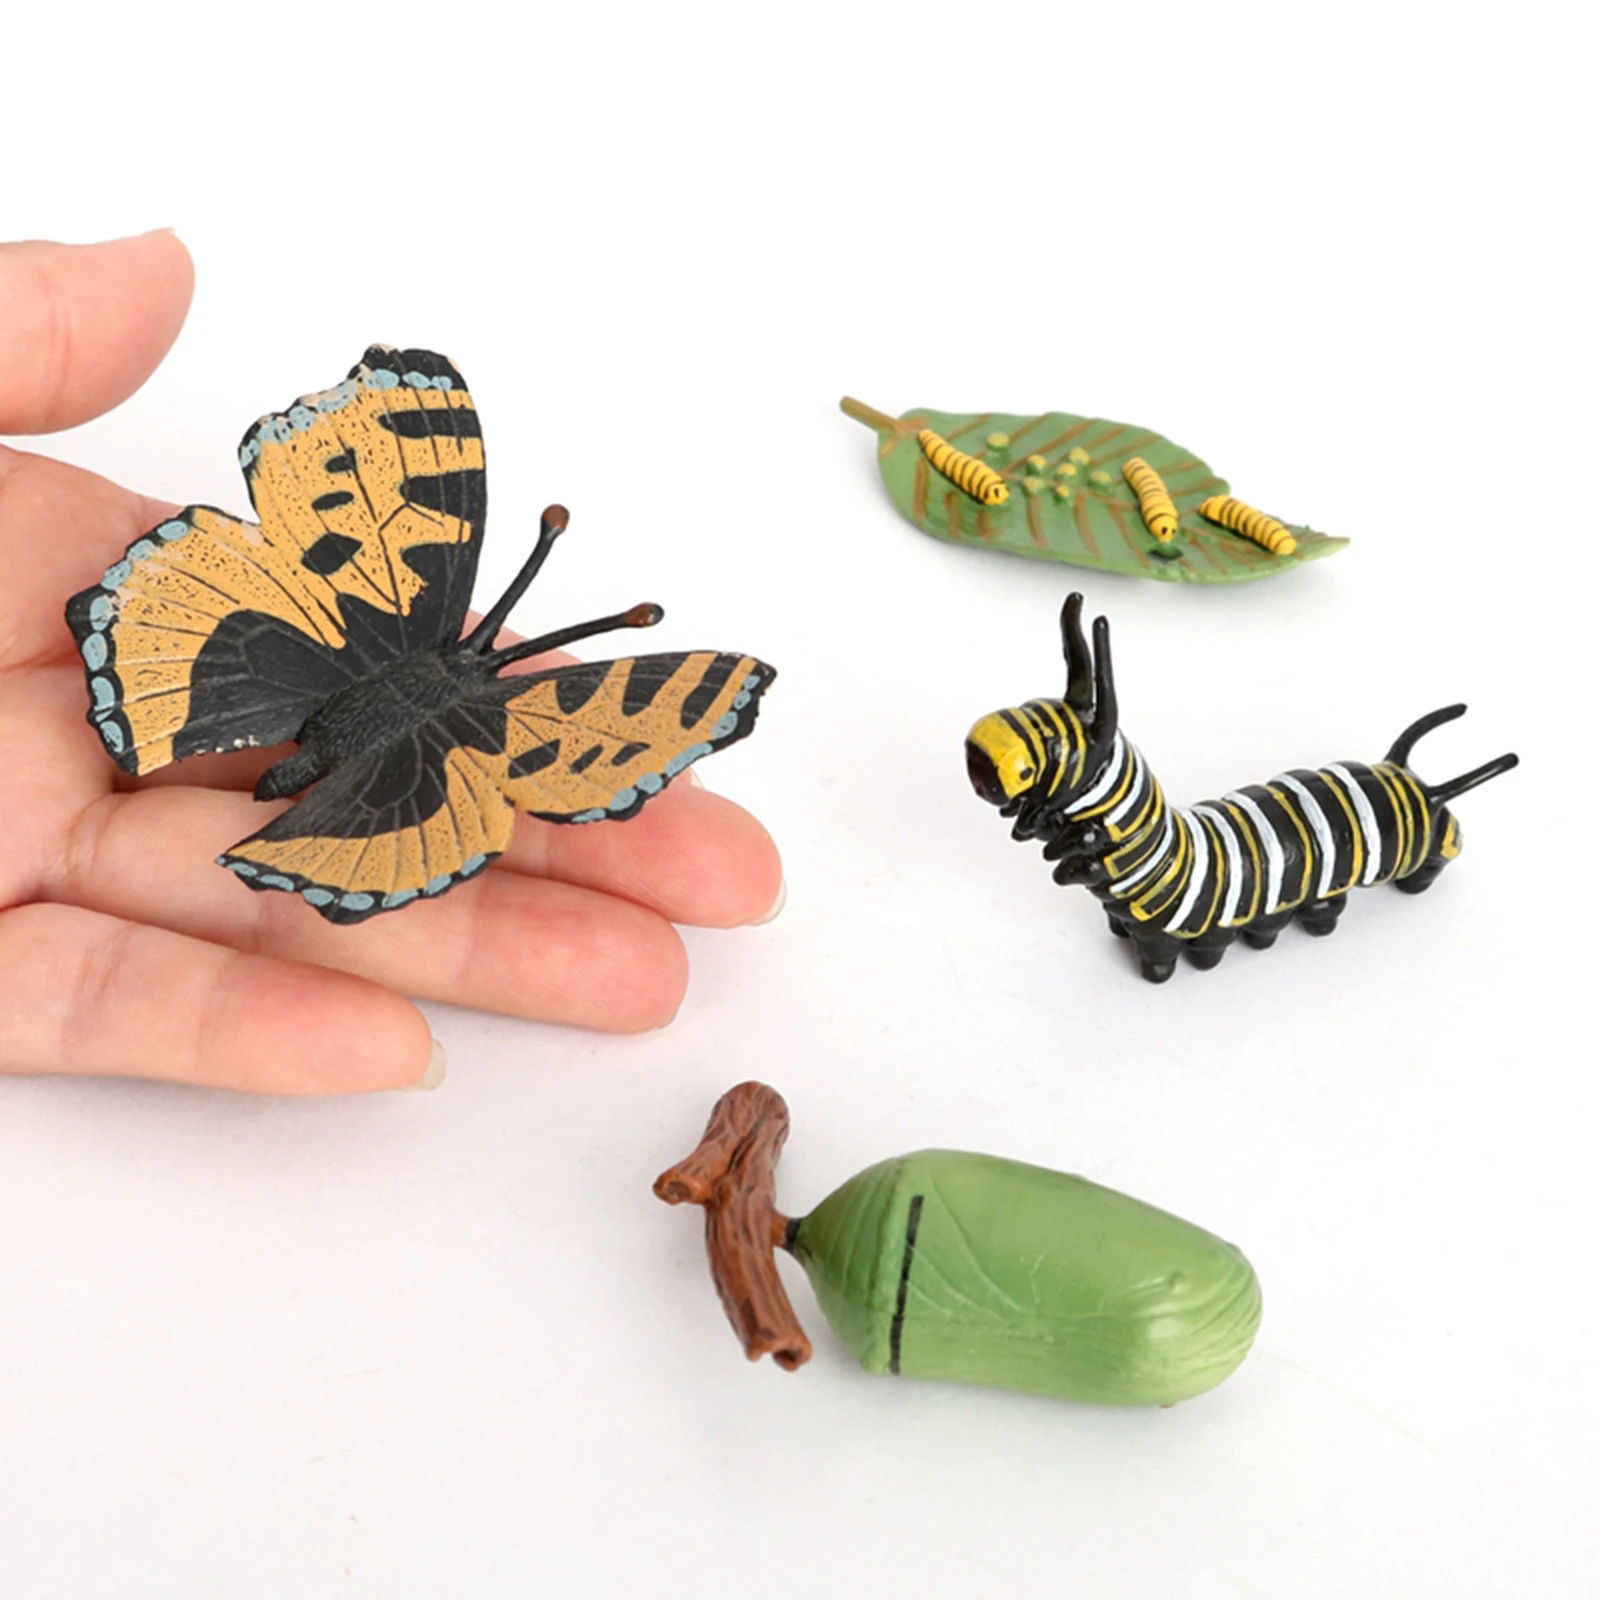 Детские Образовательные Игрушки для раннего развития детей дошкольногоИгрушка Бабочка жизненный цикл модель подарок